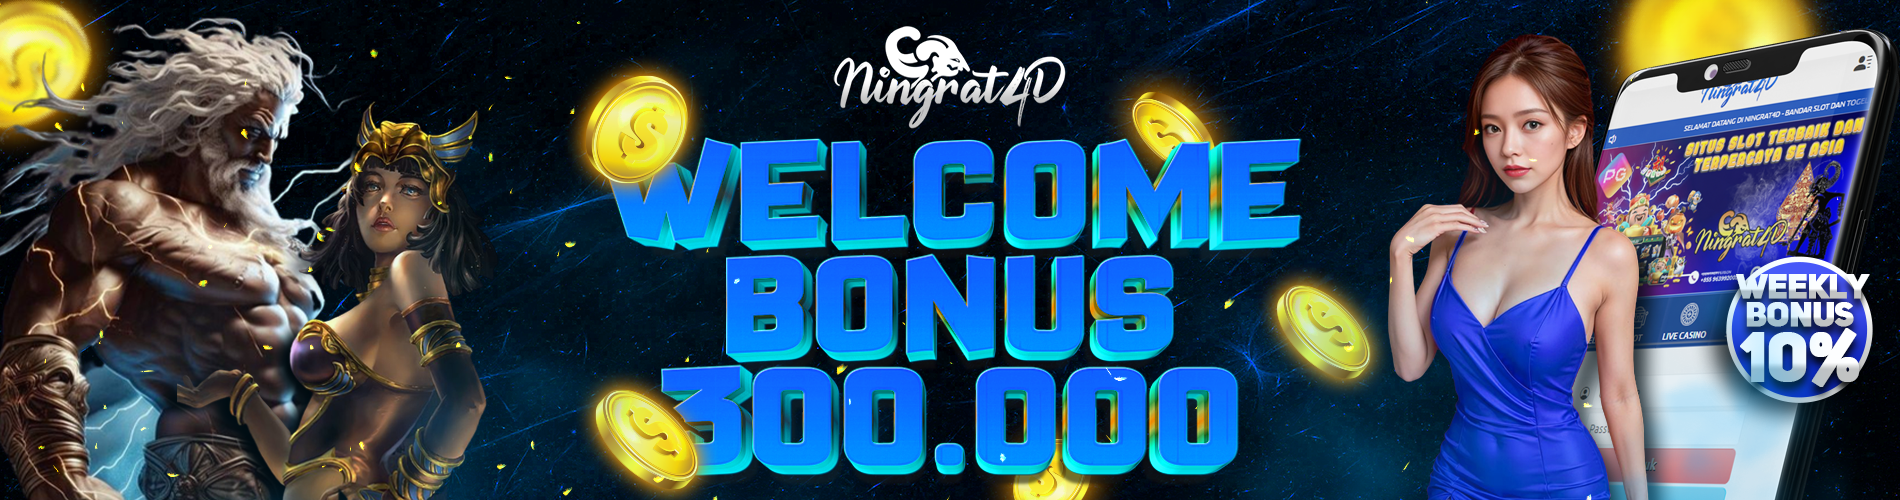 Welcome Bonus 300K di Ningrat4D